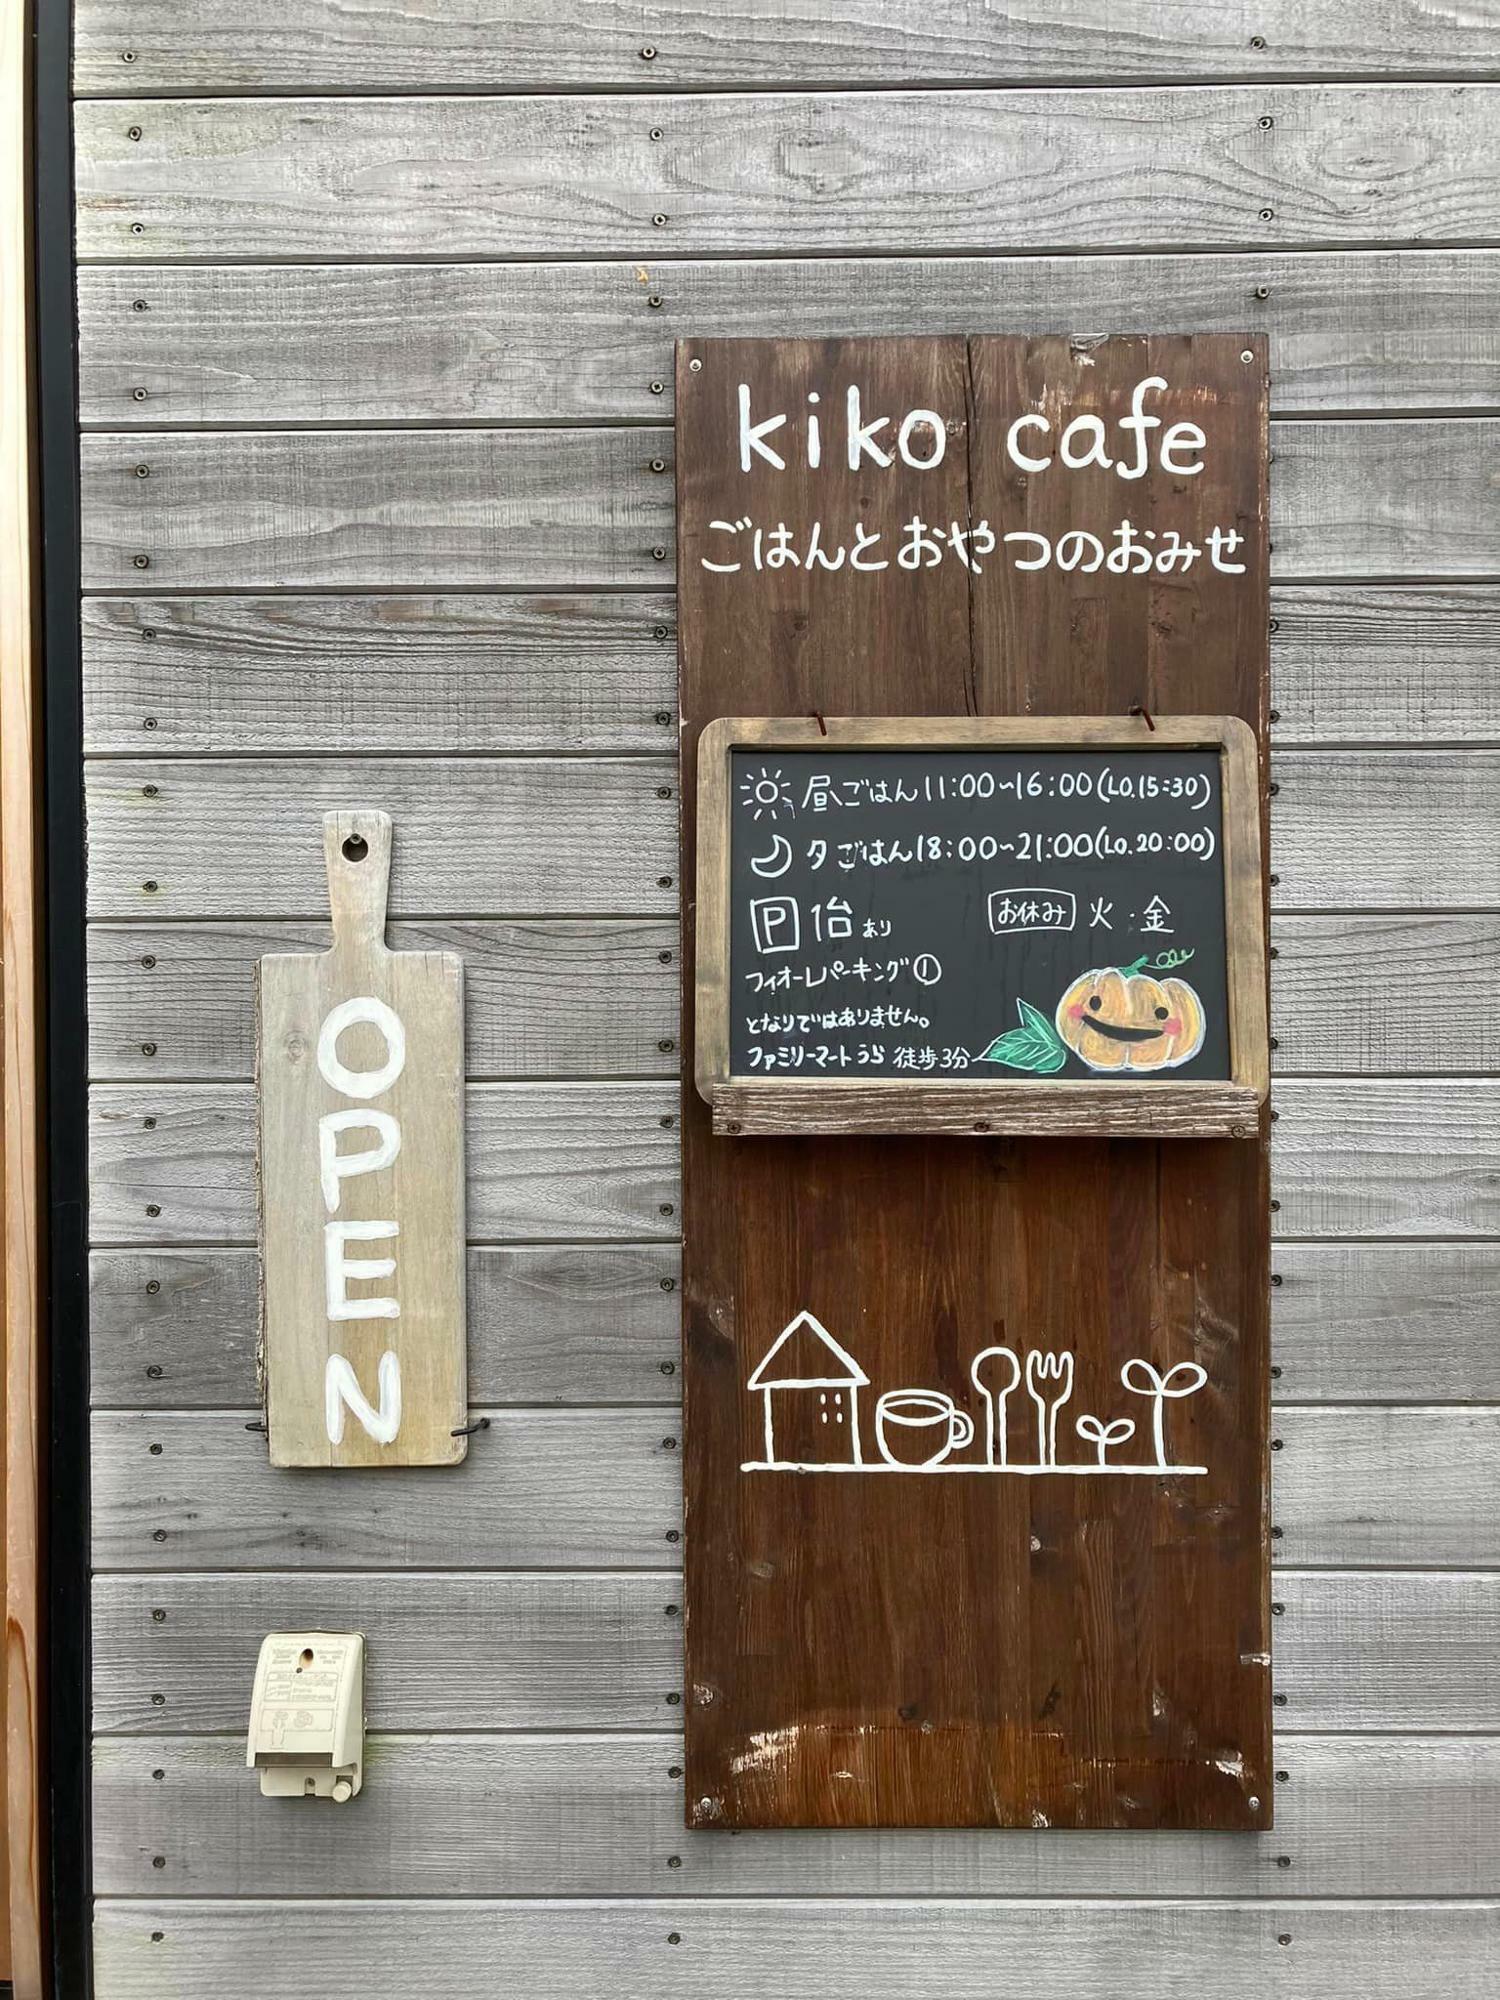 kiko cafe 看板